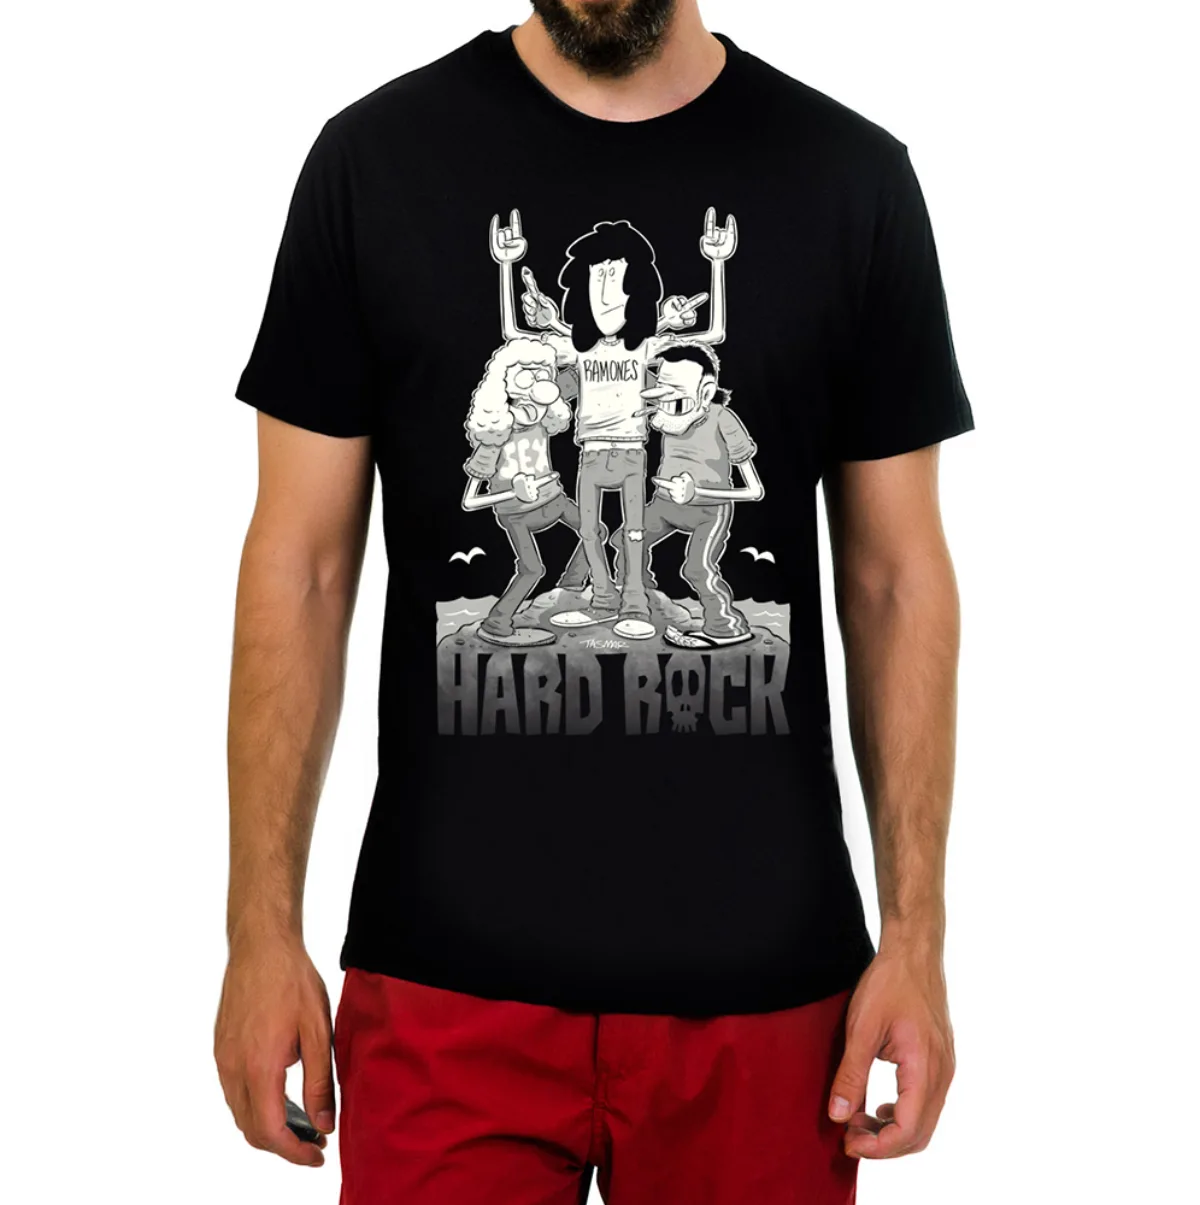 Hard Rock t-shirt 2019